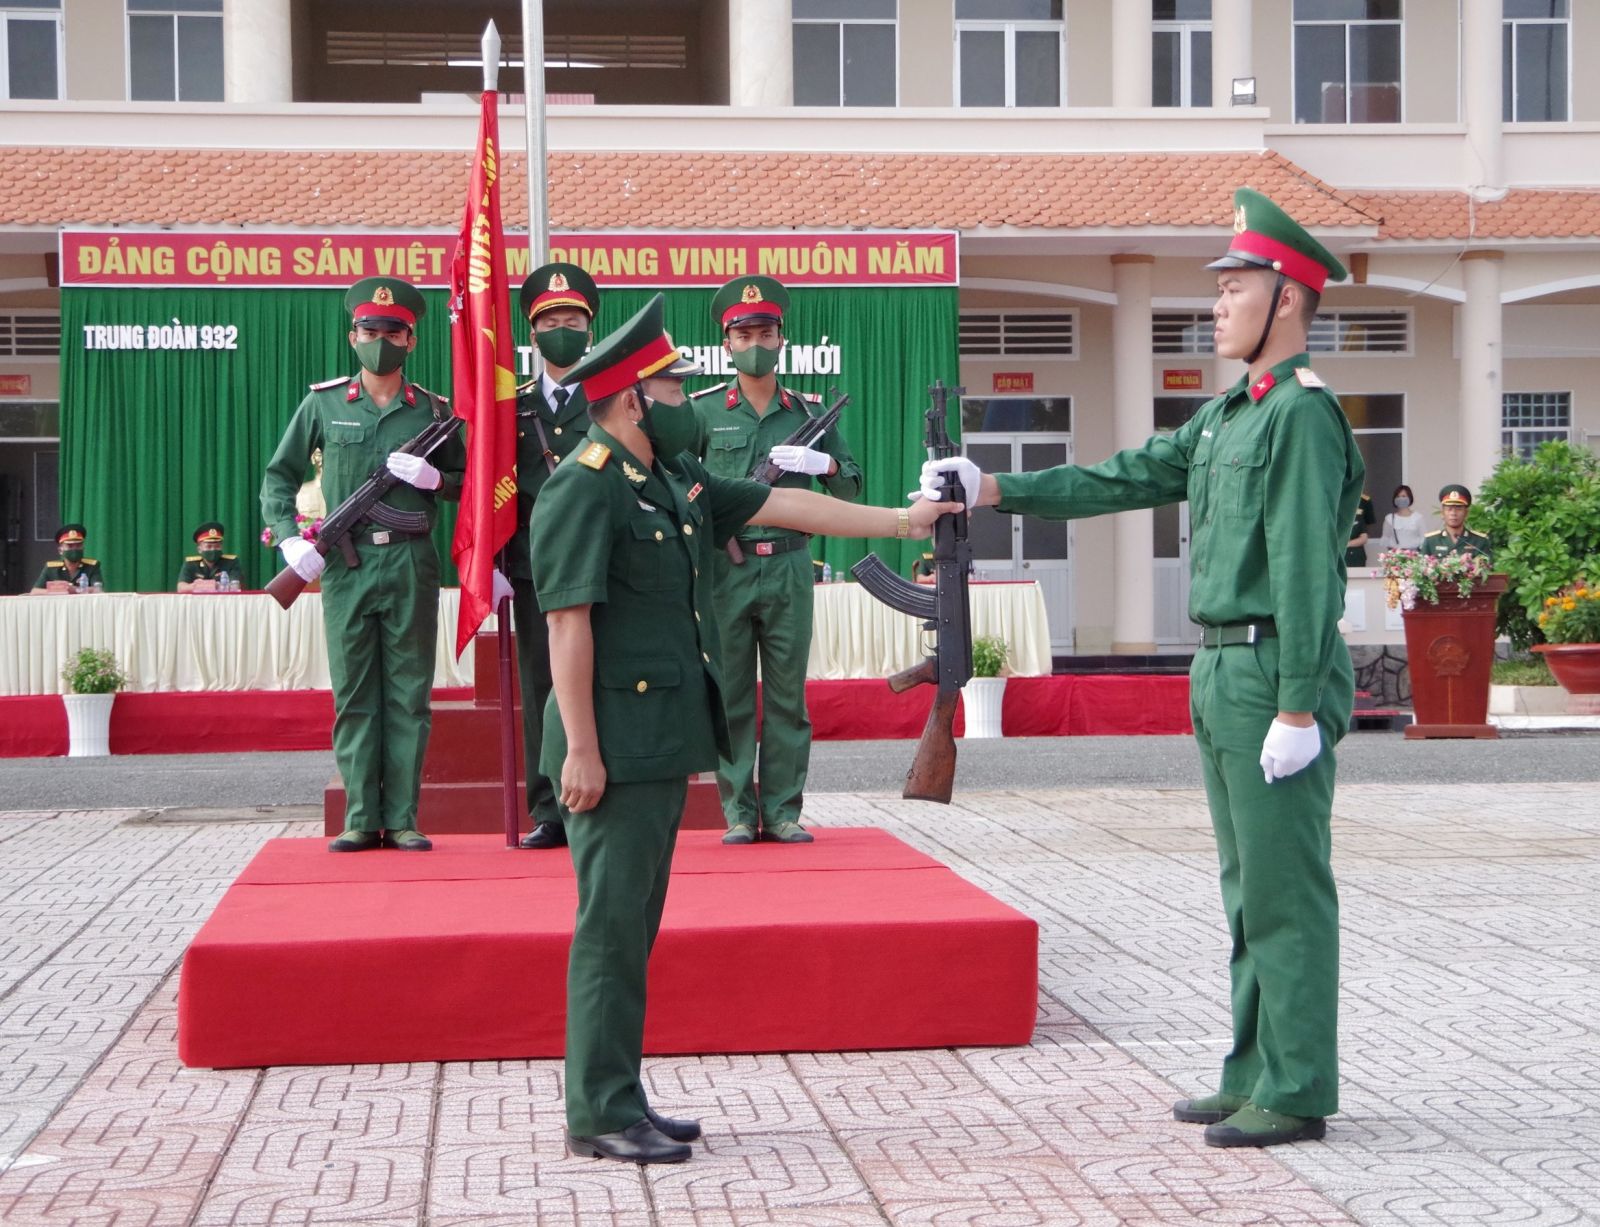 Thượng tá Cao Thanh Hồng, Trung đoàn trưởng Trung đoàn Bộ binh 932 thực hiện nghi thức trao vũ khí cho chiến sĩ mới.